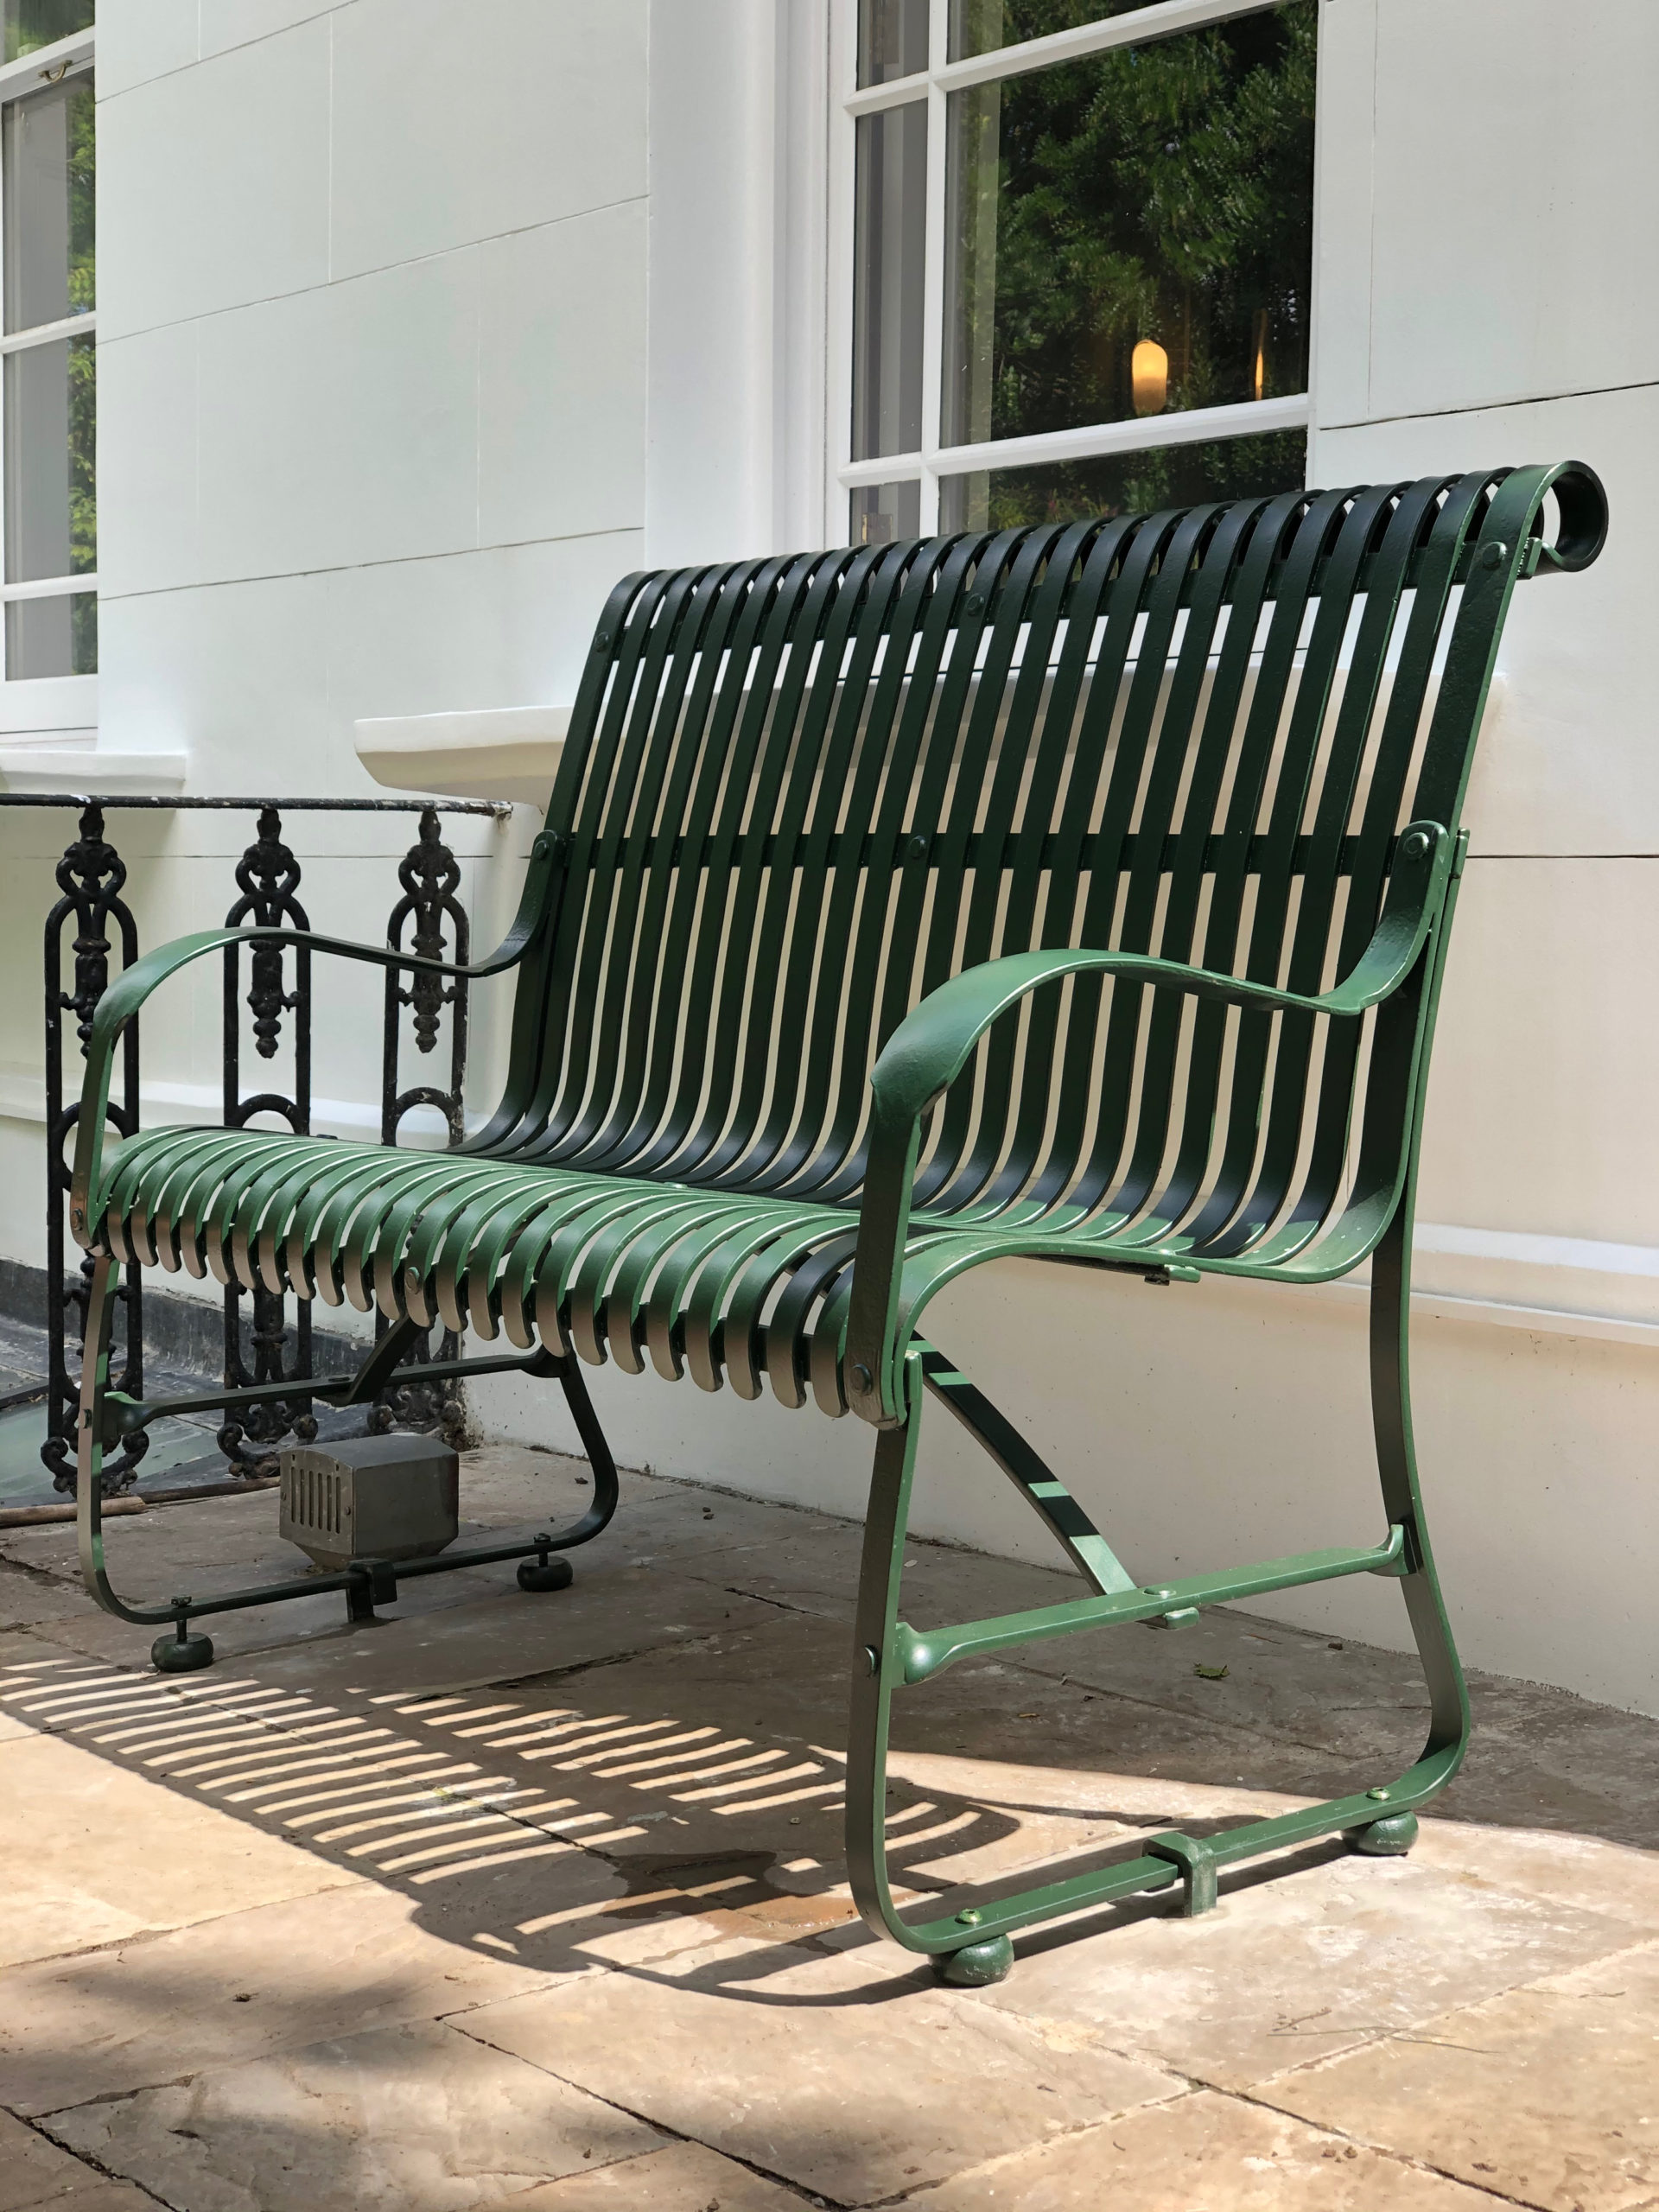 Garden-bench-wrought-iron